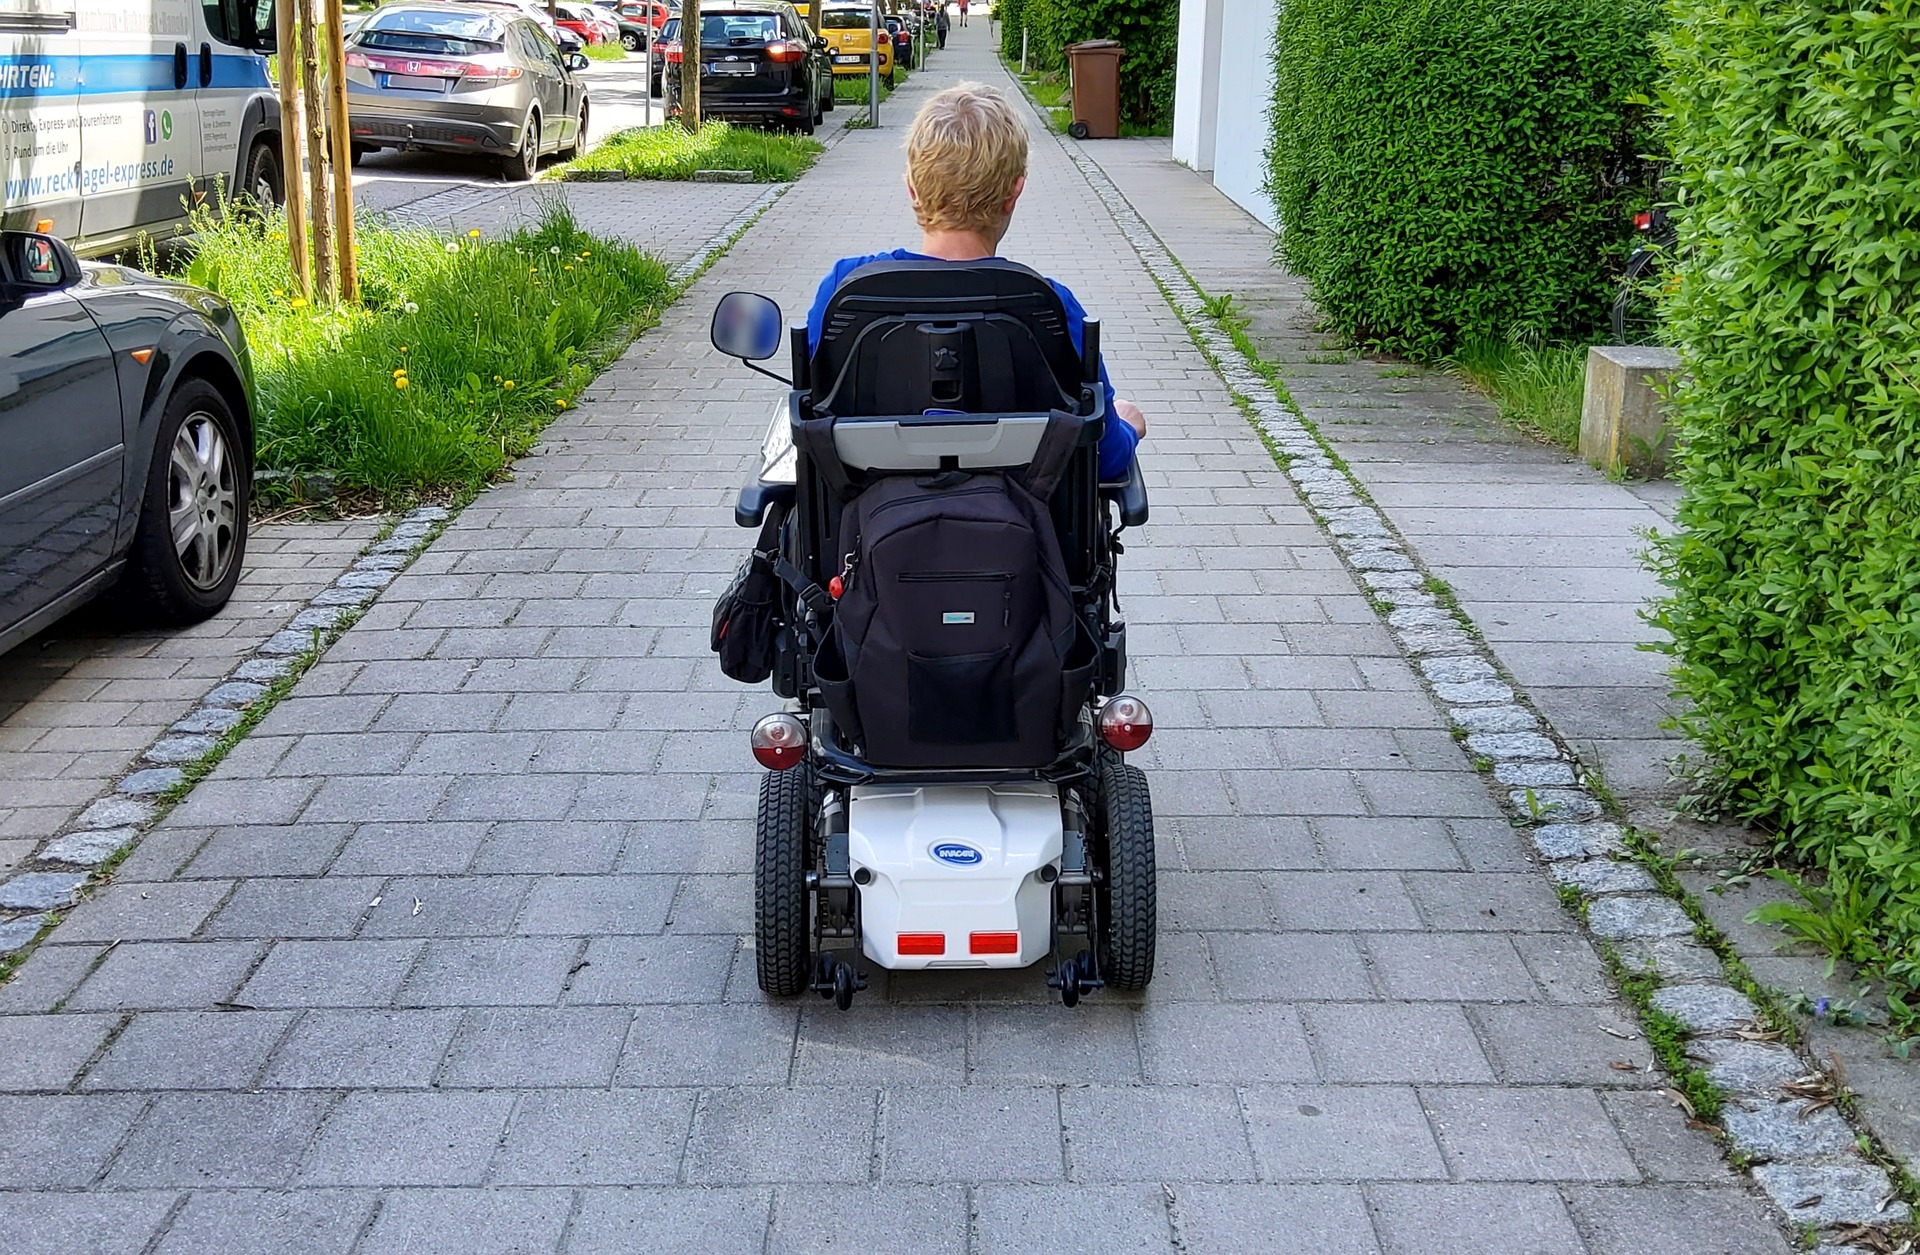 A women heads down the path in a wheelchair.